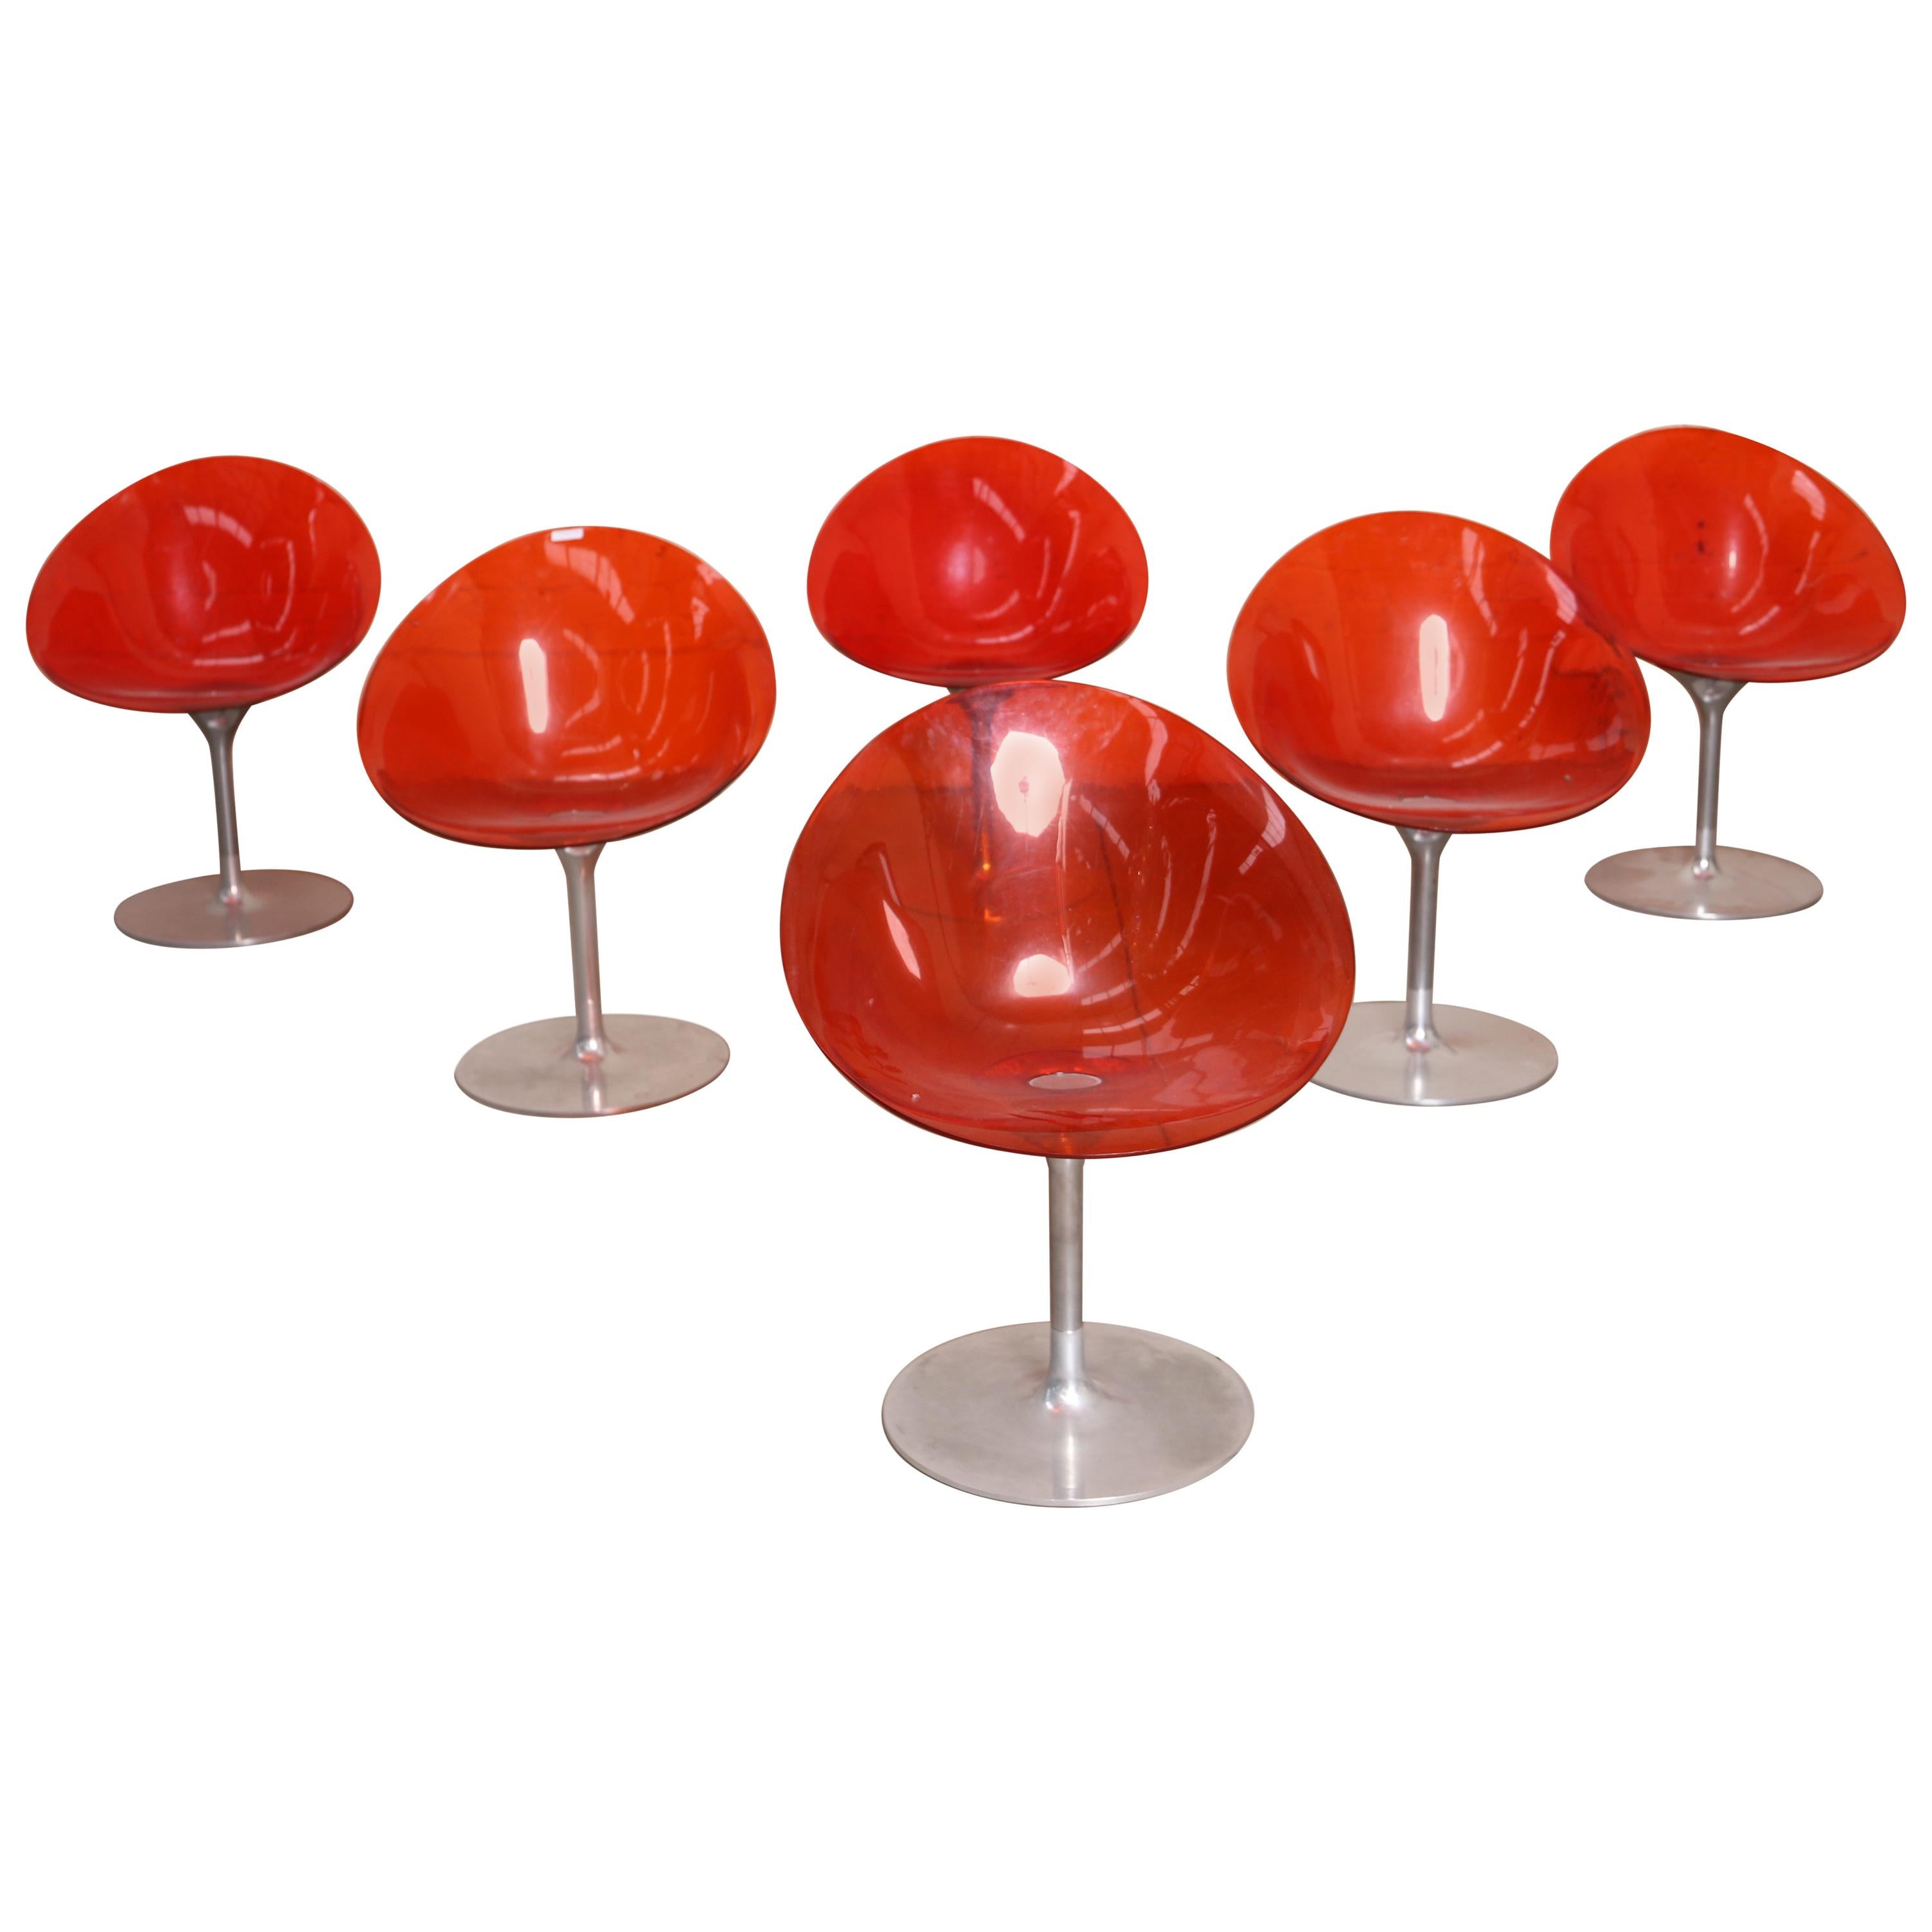 Sechs Stühle der Serie "Eros" von Philippe Starck